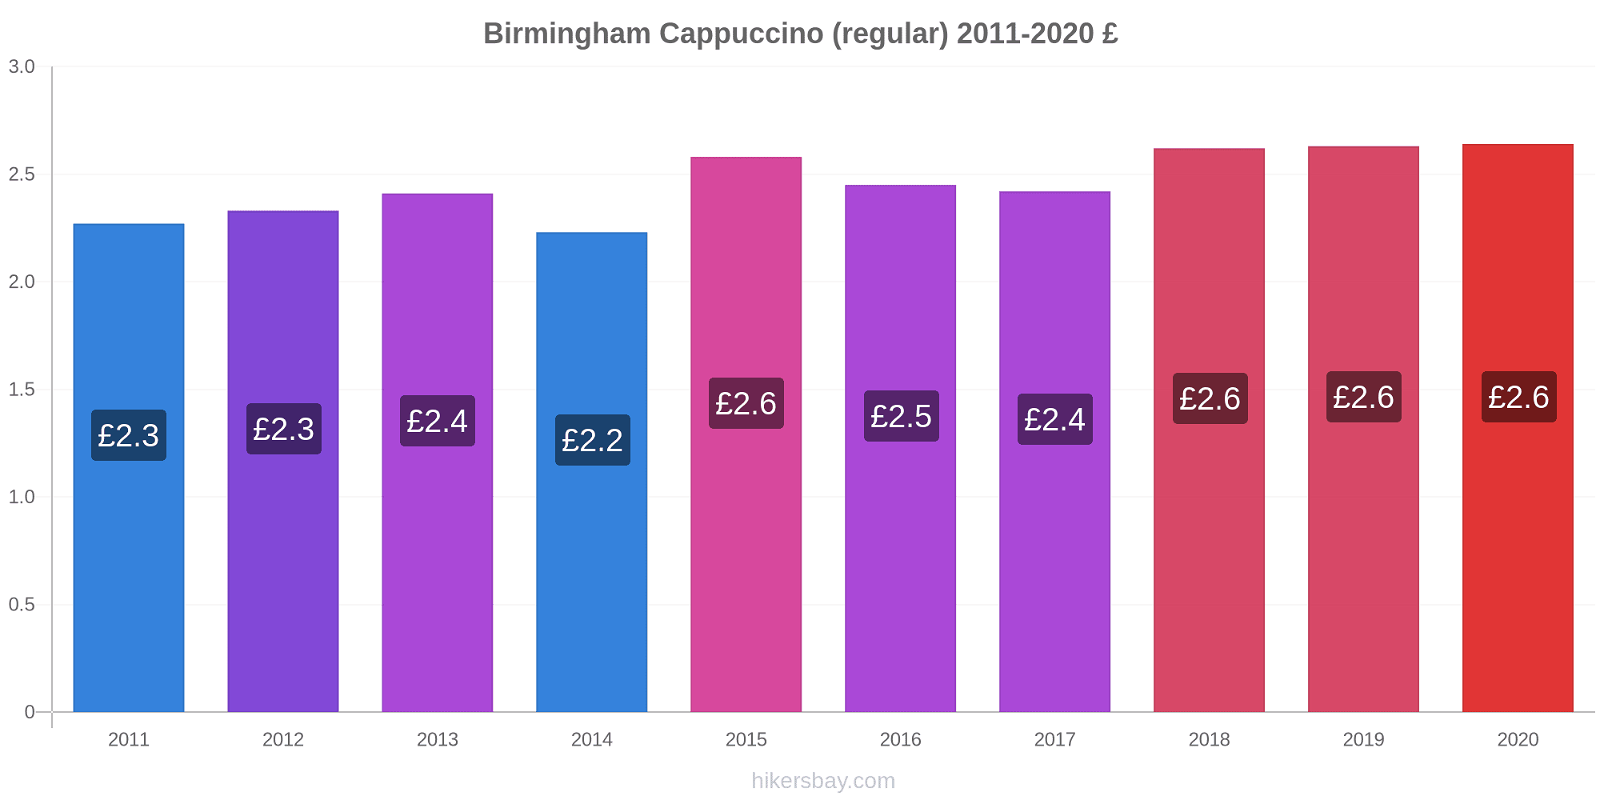 Birmingham variação de preço Capuccino (regular) hikersbay.com